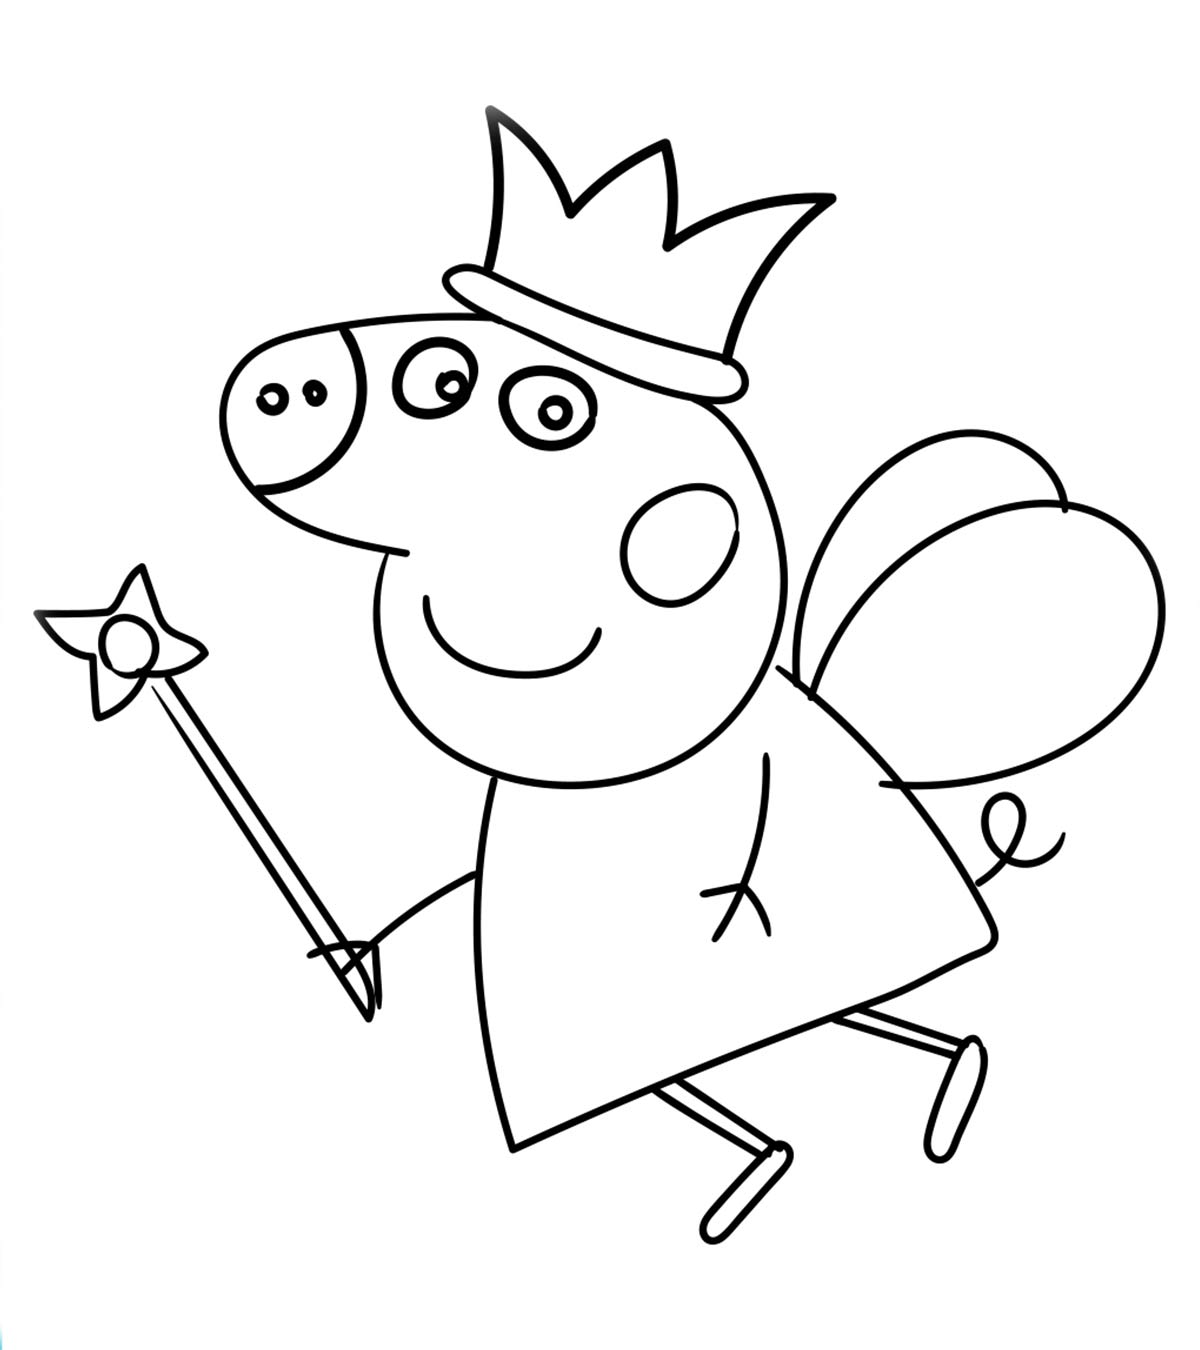 25 Easy Peppa Pig Drawing Ideas  Draw Peppa Pig